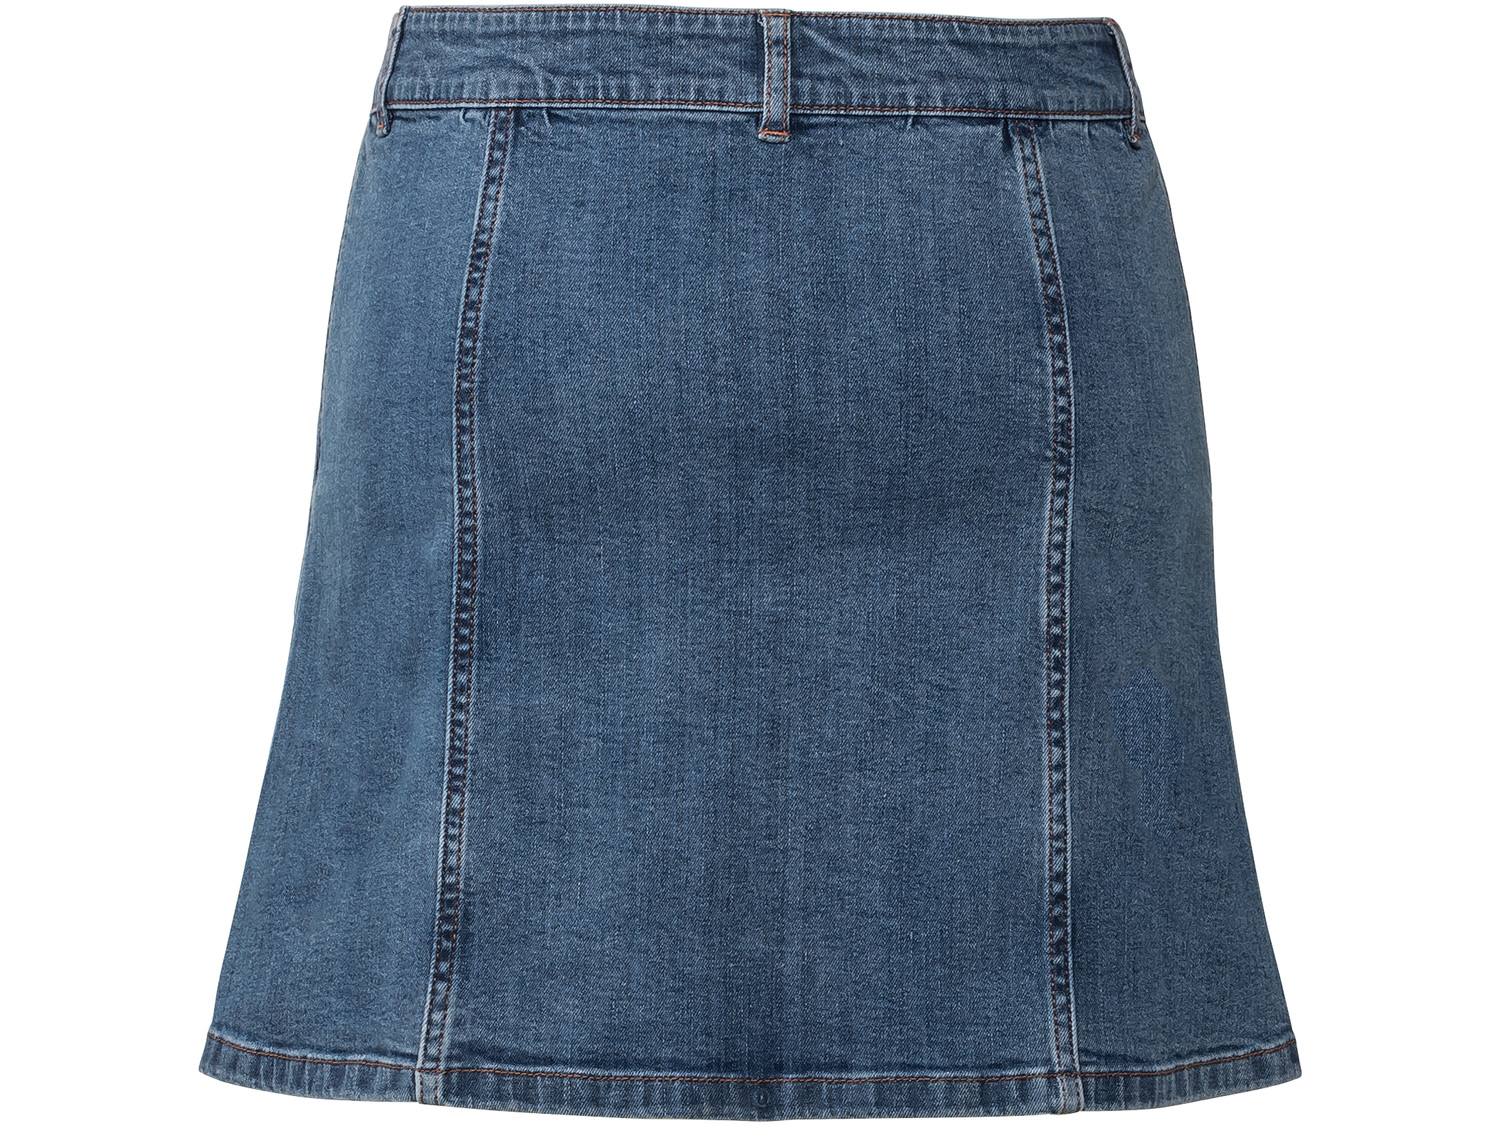 Spódnica jeansowa damska Esmara, cena 29,99 PLN 
- rozmiary: 34-44
- wysoka zawartość ...